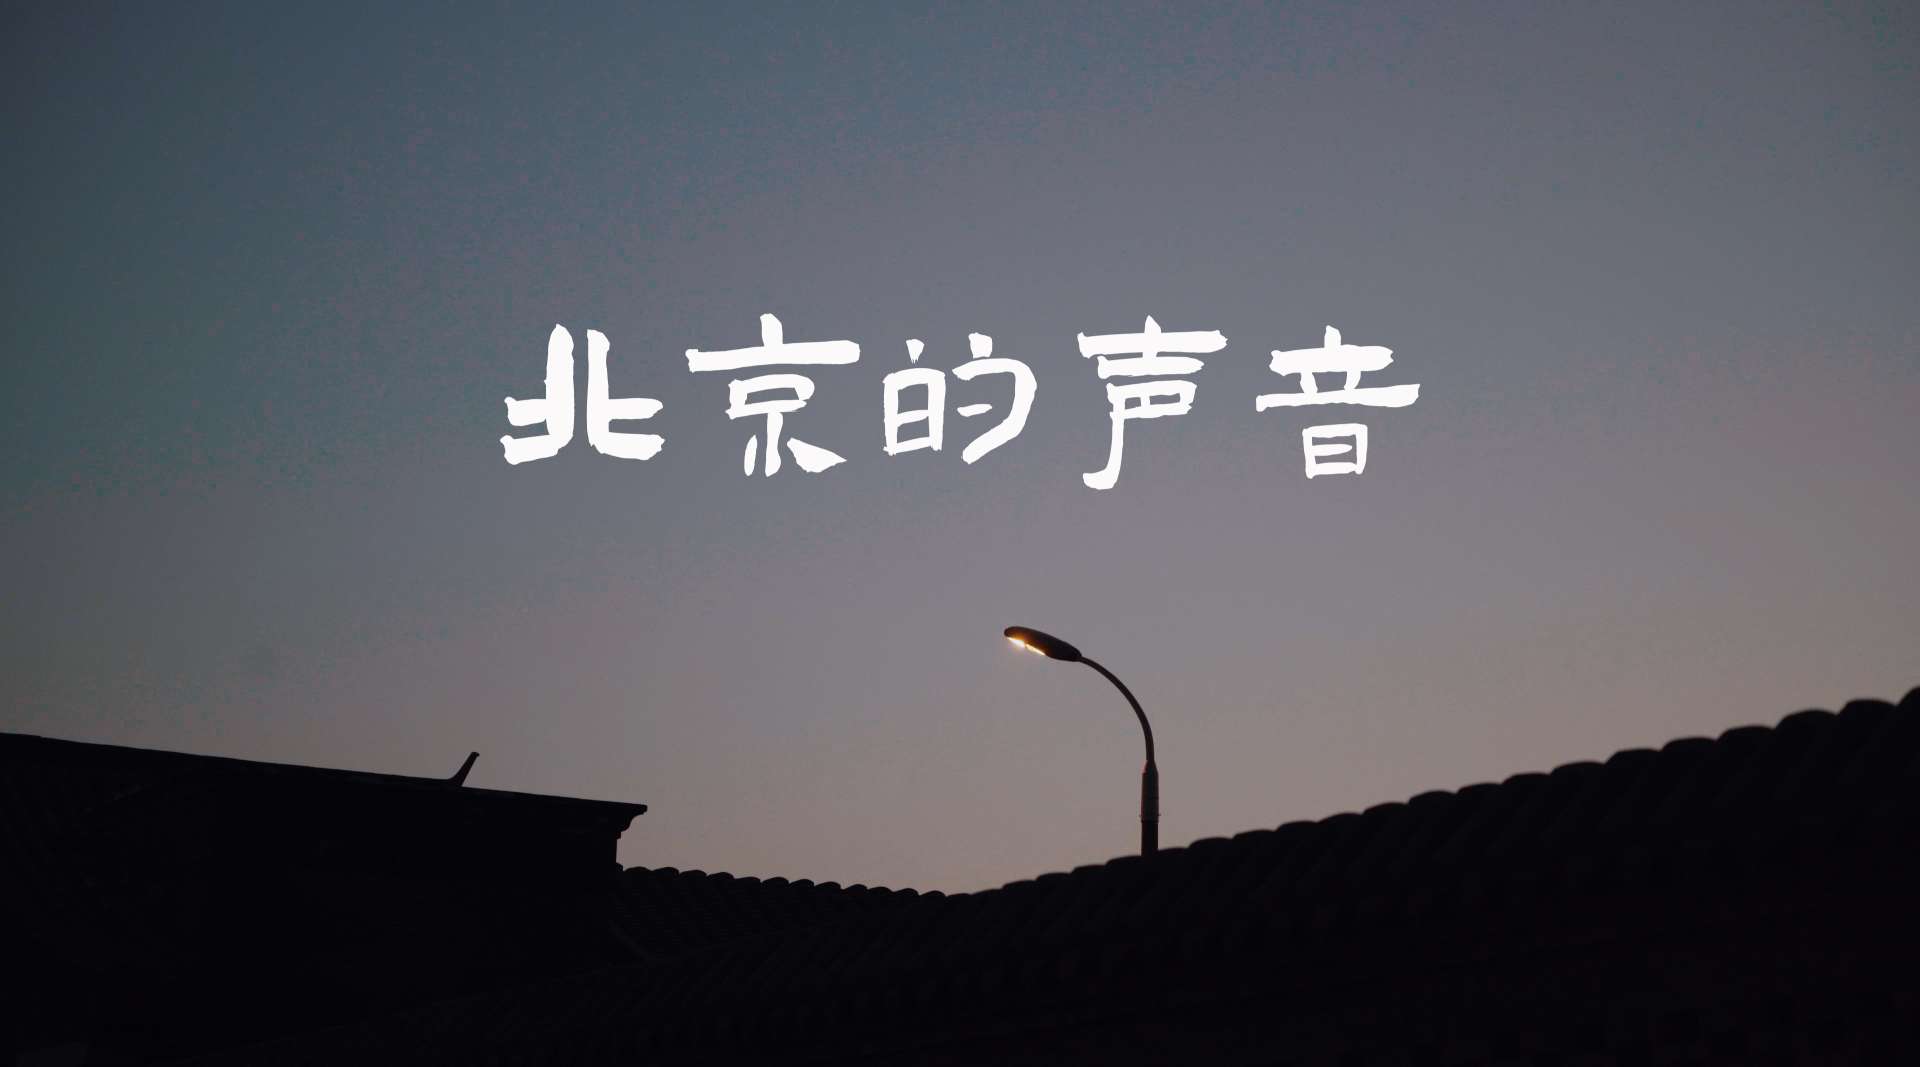 电影质感人文短片《北京的声音》